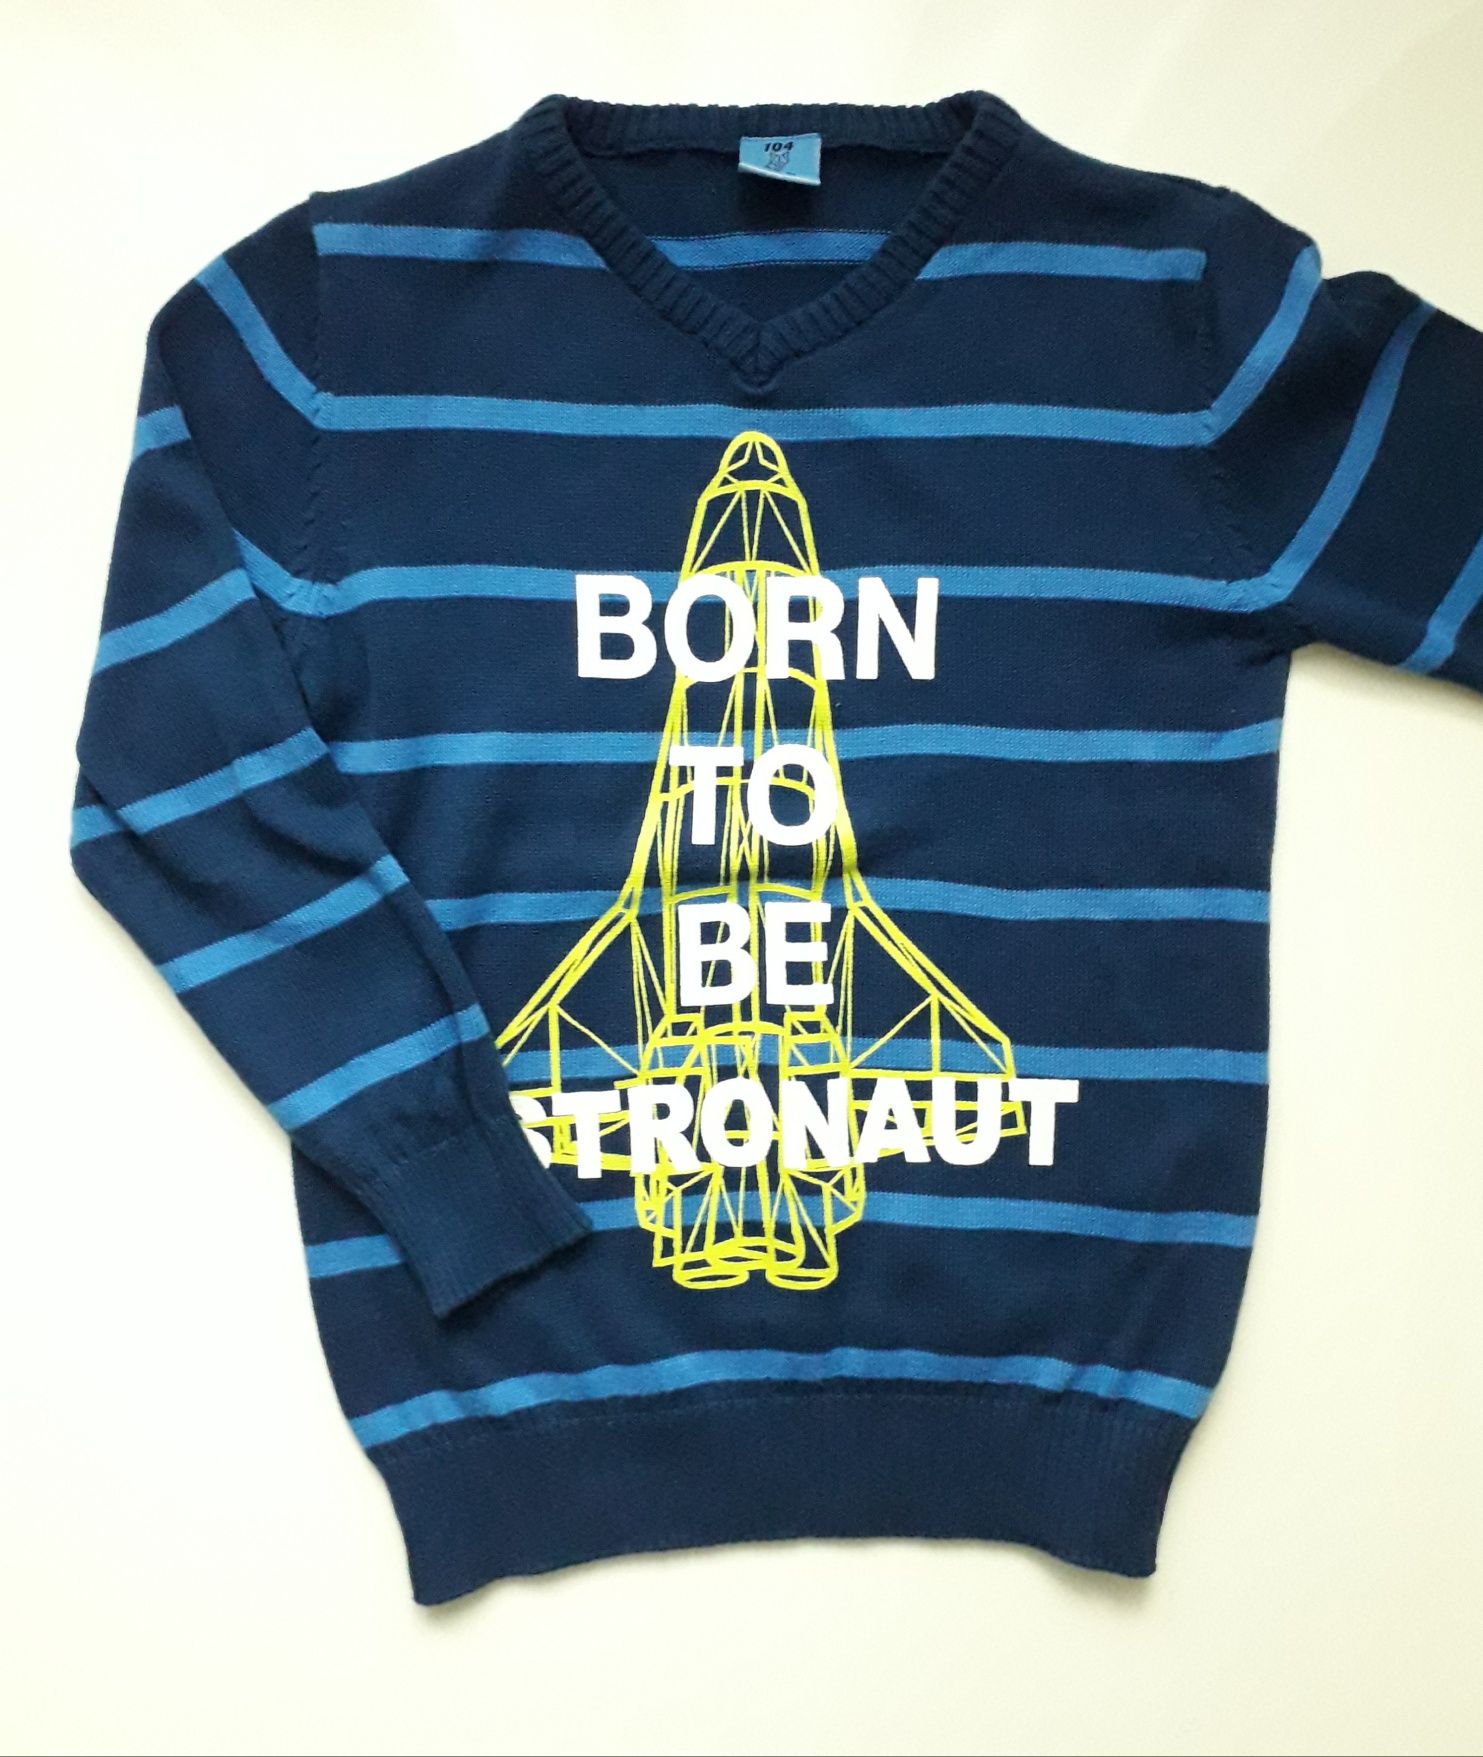 Nowy sweterek, bluza dla chłopca rozm 104